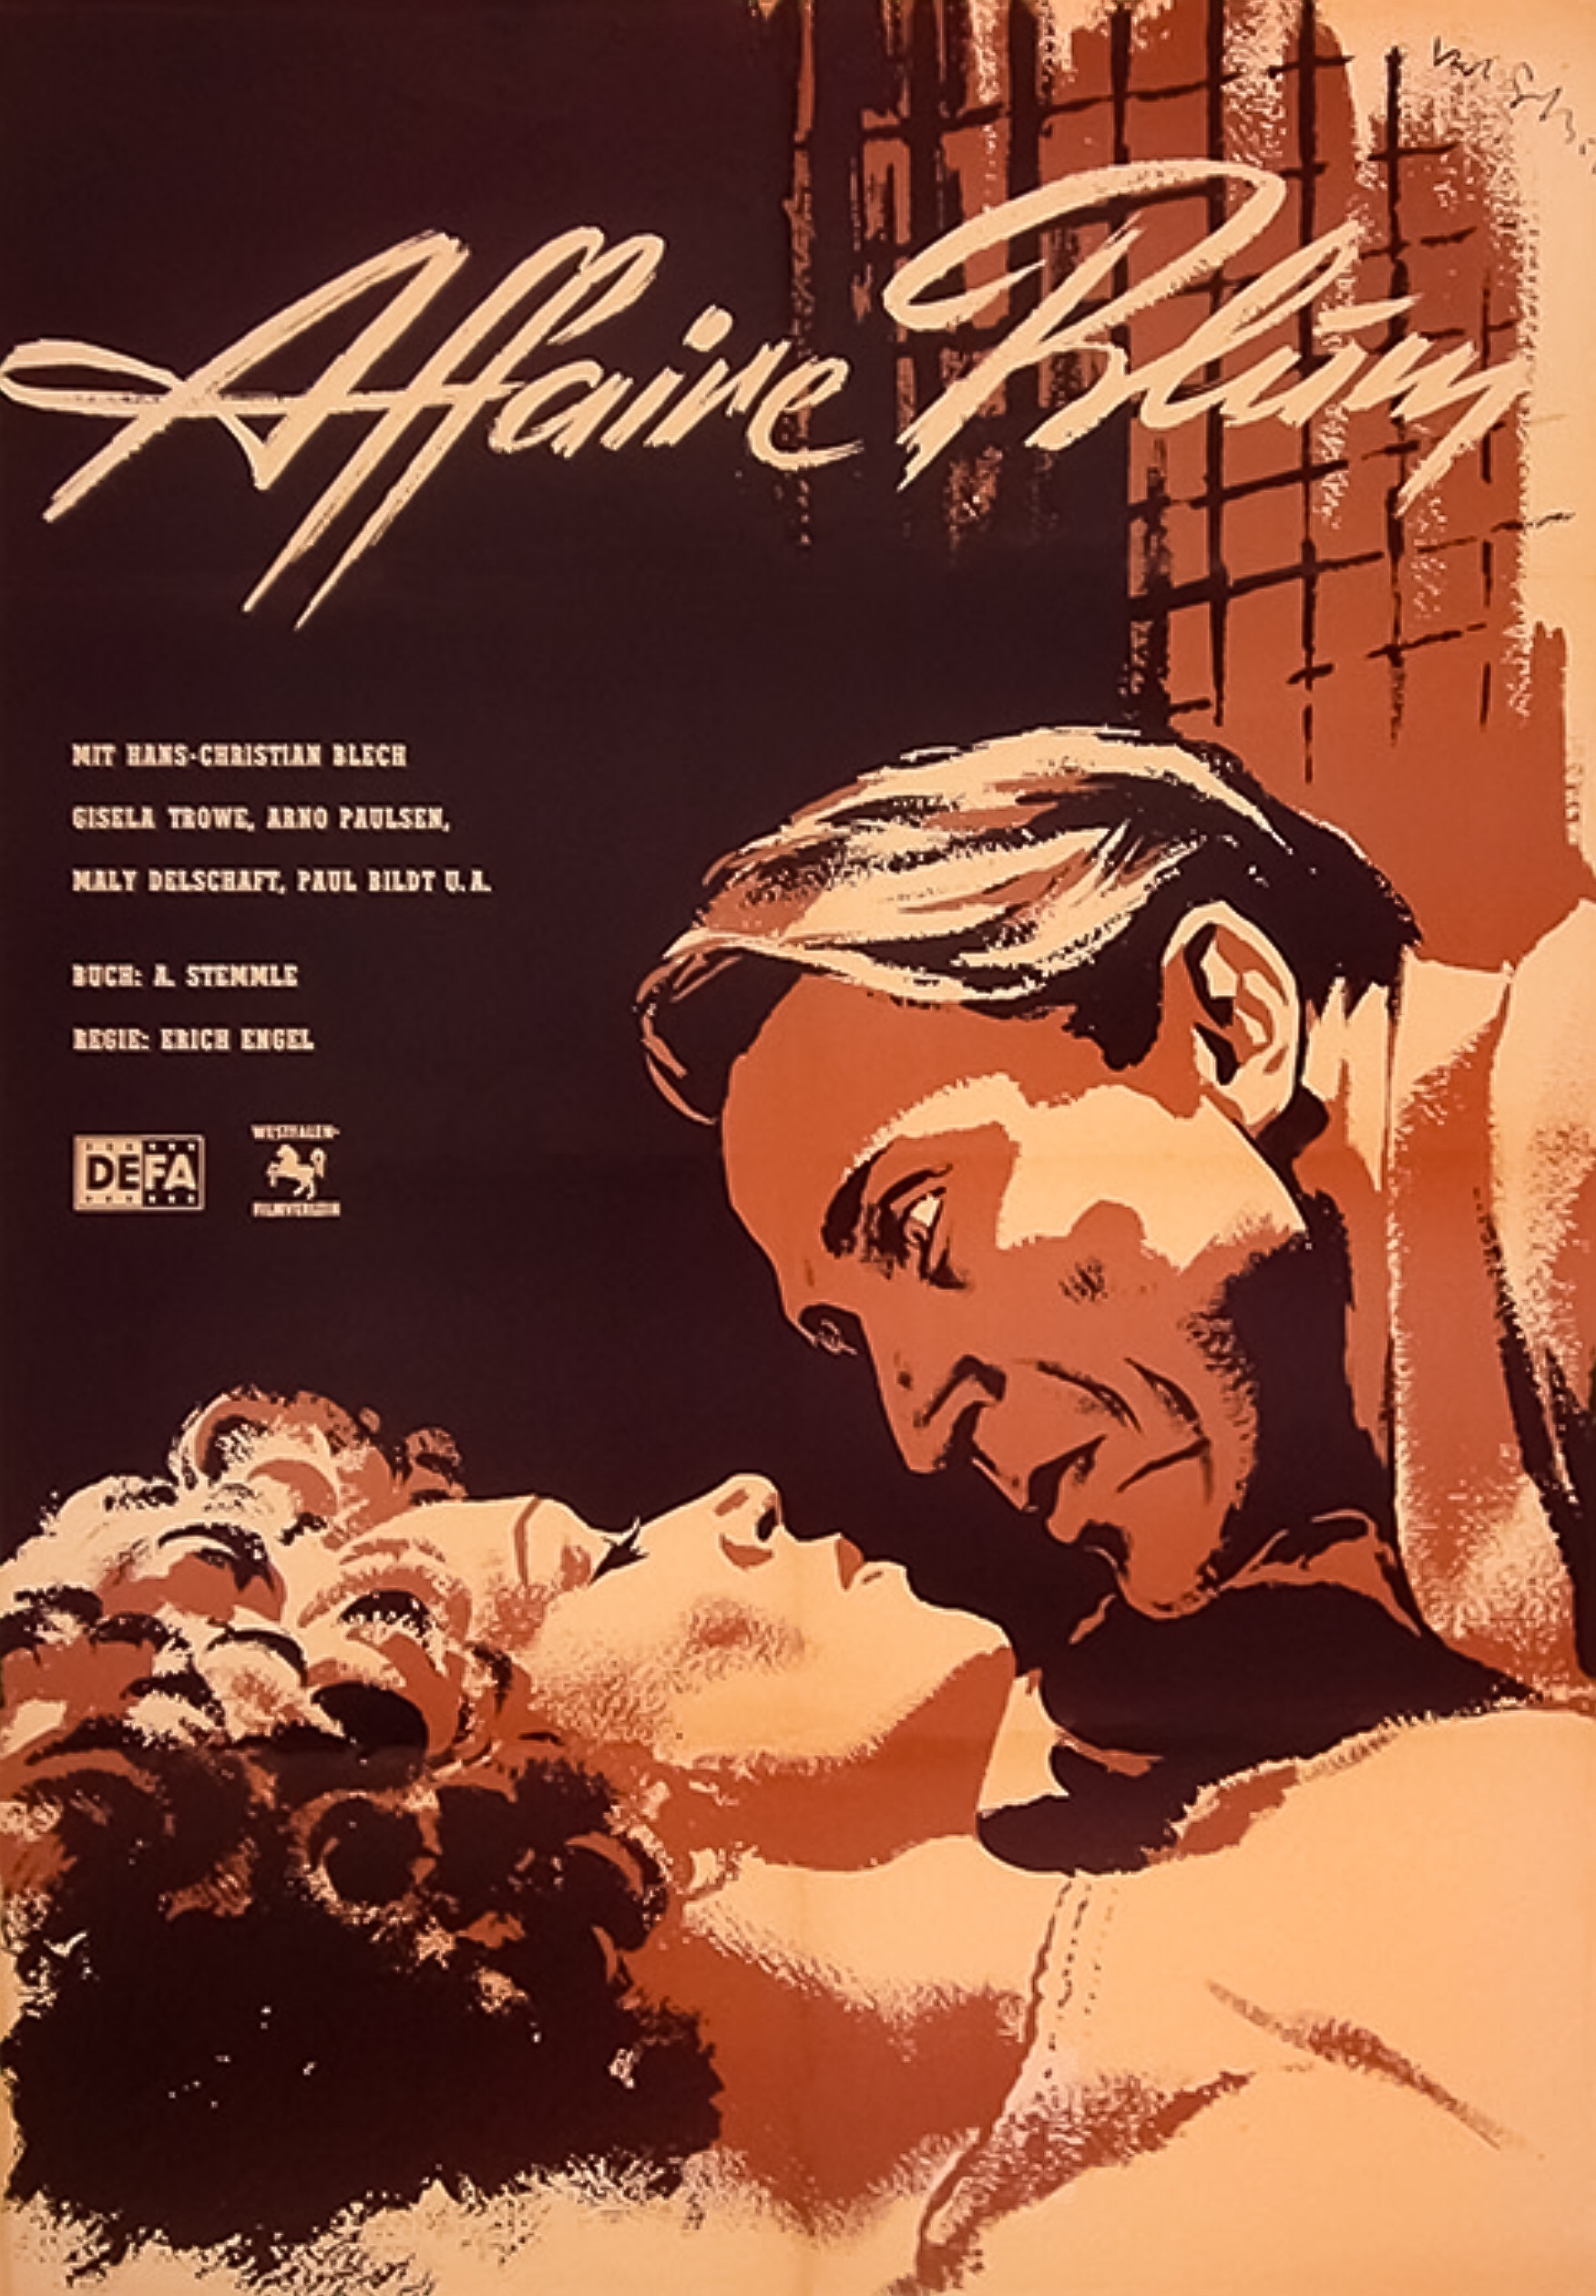 The Affair Blum (1948) Screenshot 3 